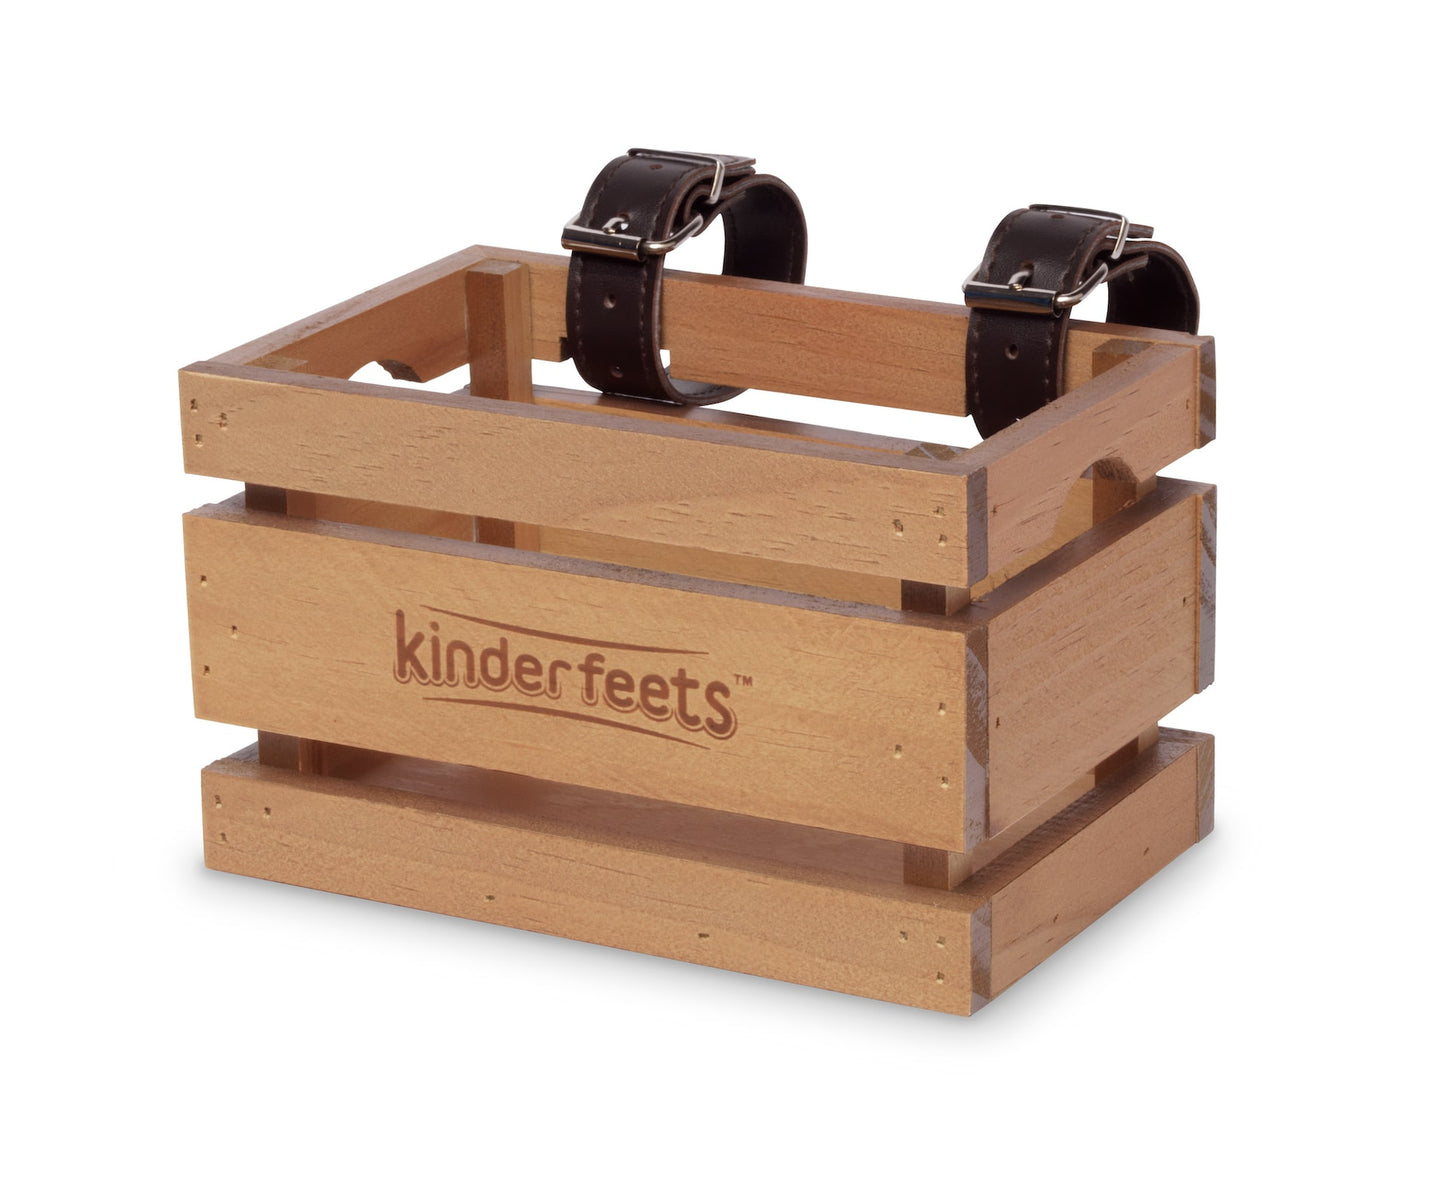 Kinderfeets® Bike Crate